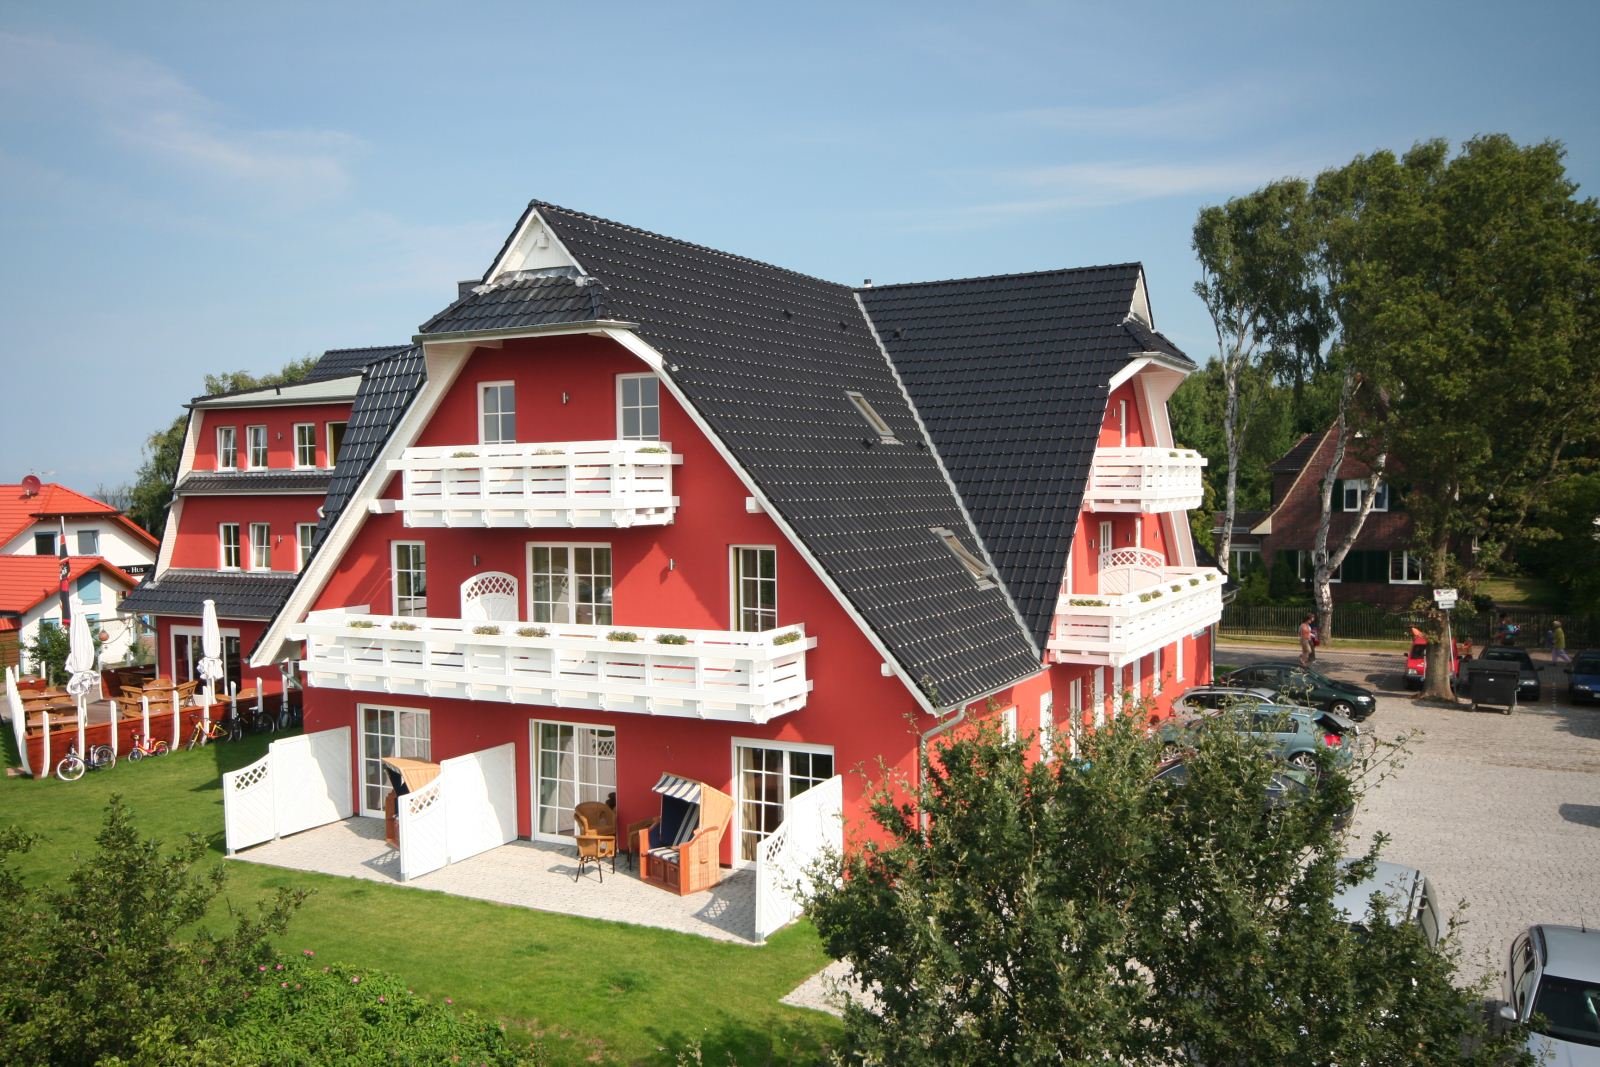 3 Tage FRÜHLINGSERWACHEN Strandhotel Deichgraf (4 Sterne) in Ostseeheilbad Graal Müritz, Mecklenburg-Vorpommern inkl. Halbpension